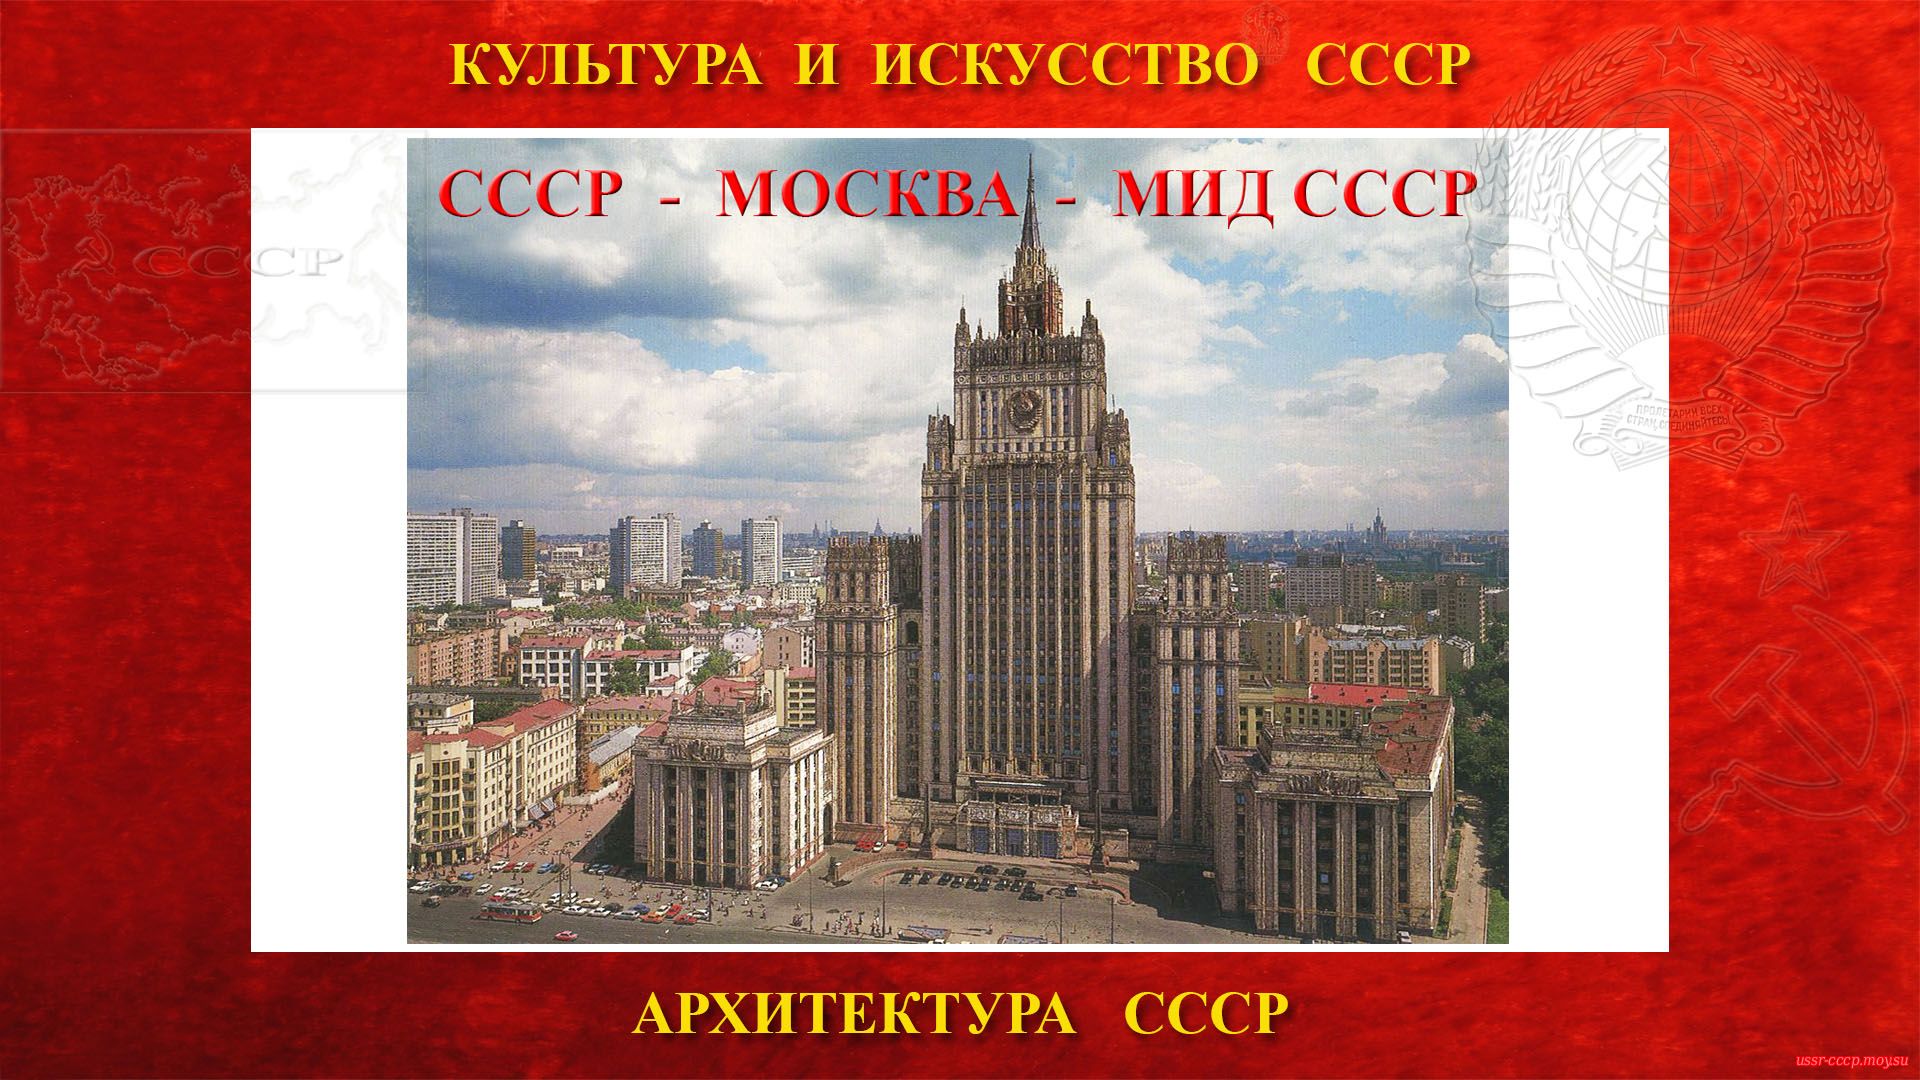 Членение в СССР — Вид декоративного приёма в архитектуре (повествование)